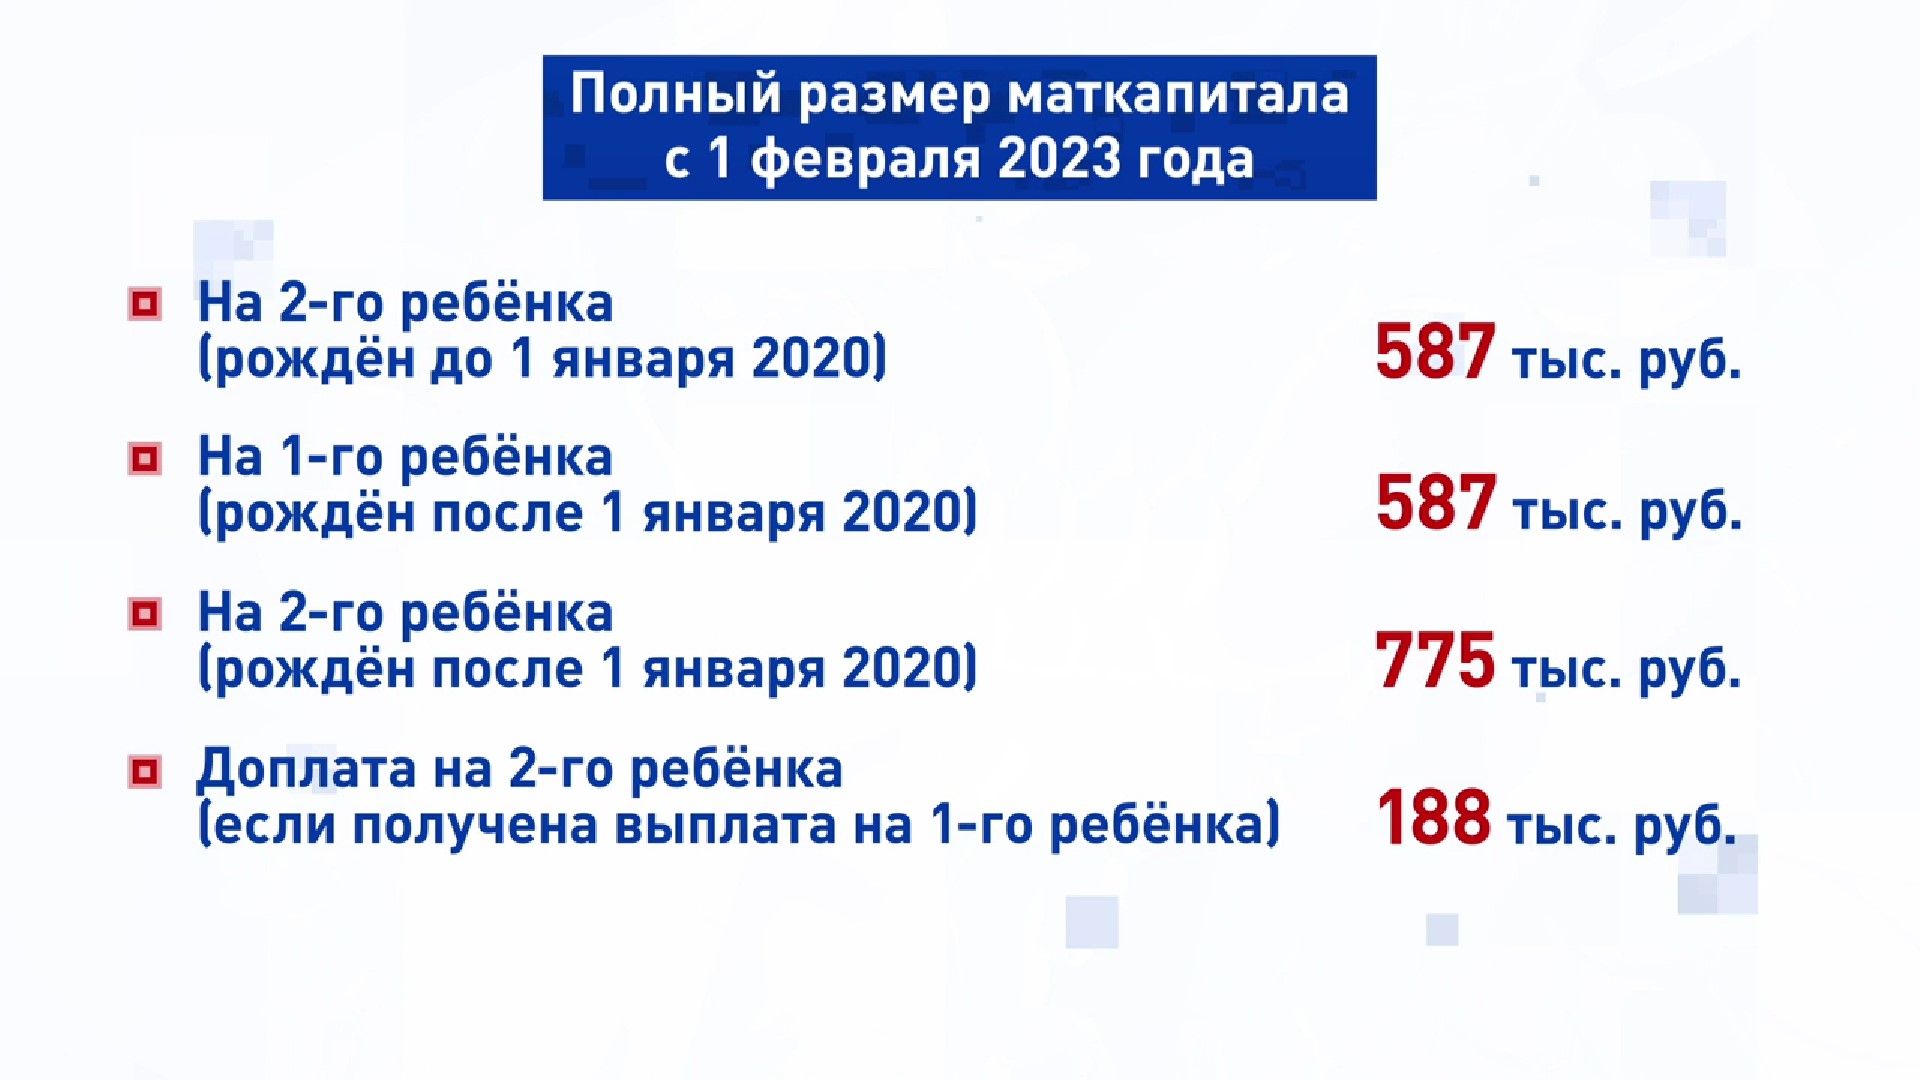 Материнский капитал в россии 2023. Сумма материнского капитала в 2023. Материнский капитал в 2023 году на 1 ребенка. Размер материнского капитала в 2023. Маткапитал 2023 году размер.